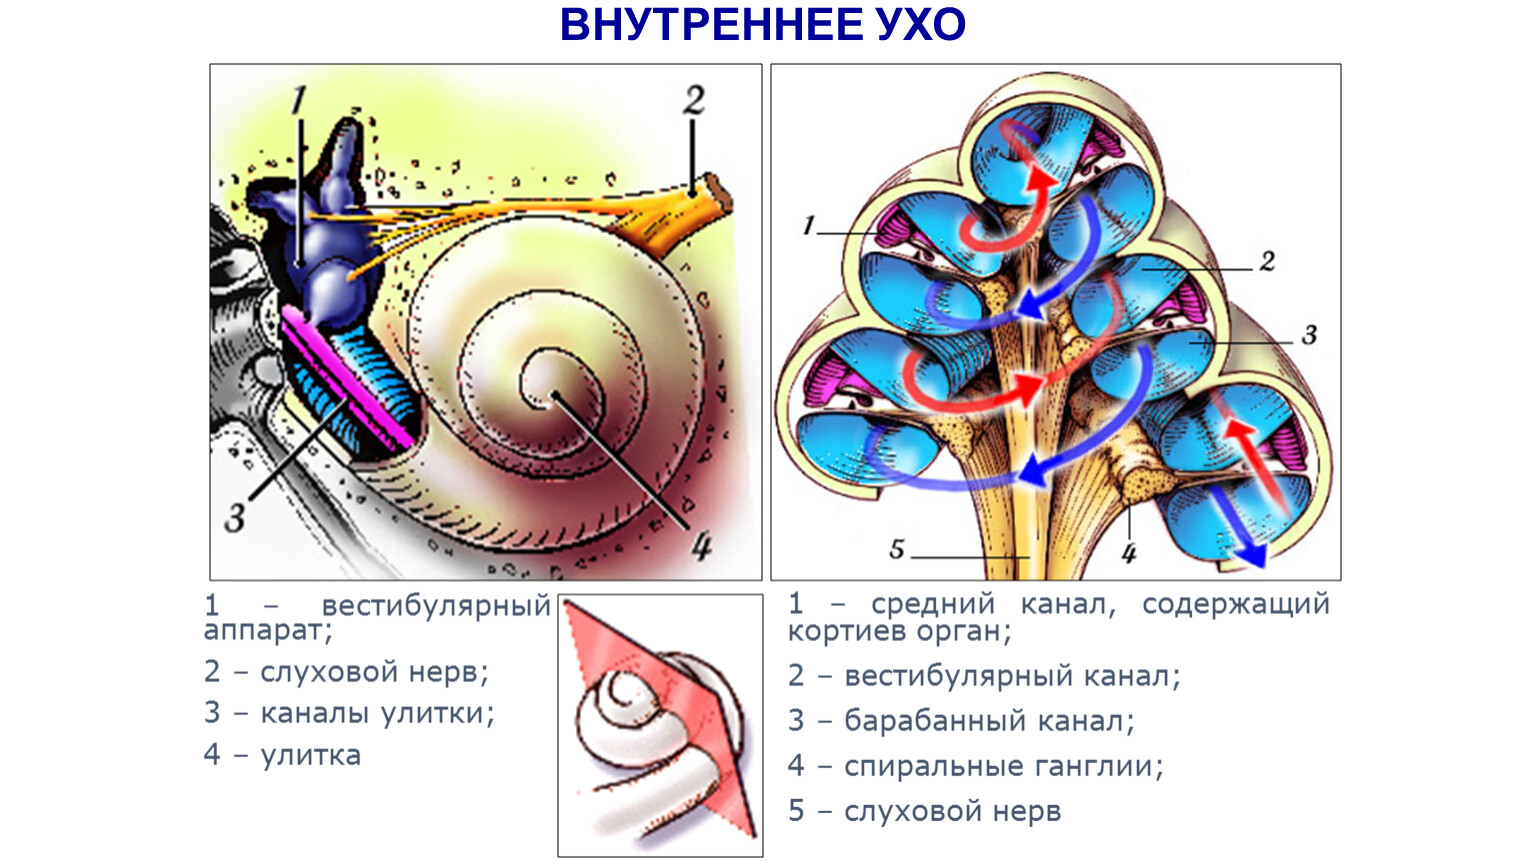 Улитка относится к органу. Внутреннее ухо строение анатомия строение улитки. Строение улитки внутреннего уха. Строение улитки внутреннего уха анатомия. Внутреннее строение улитки внутреннего уха.